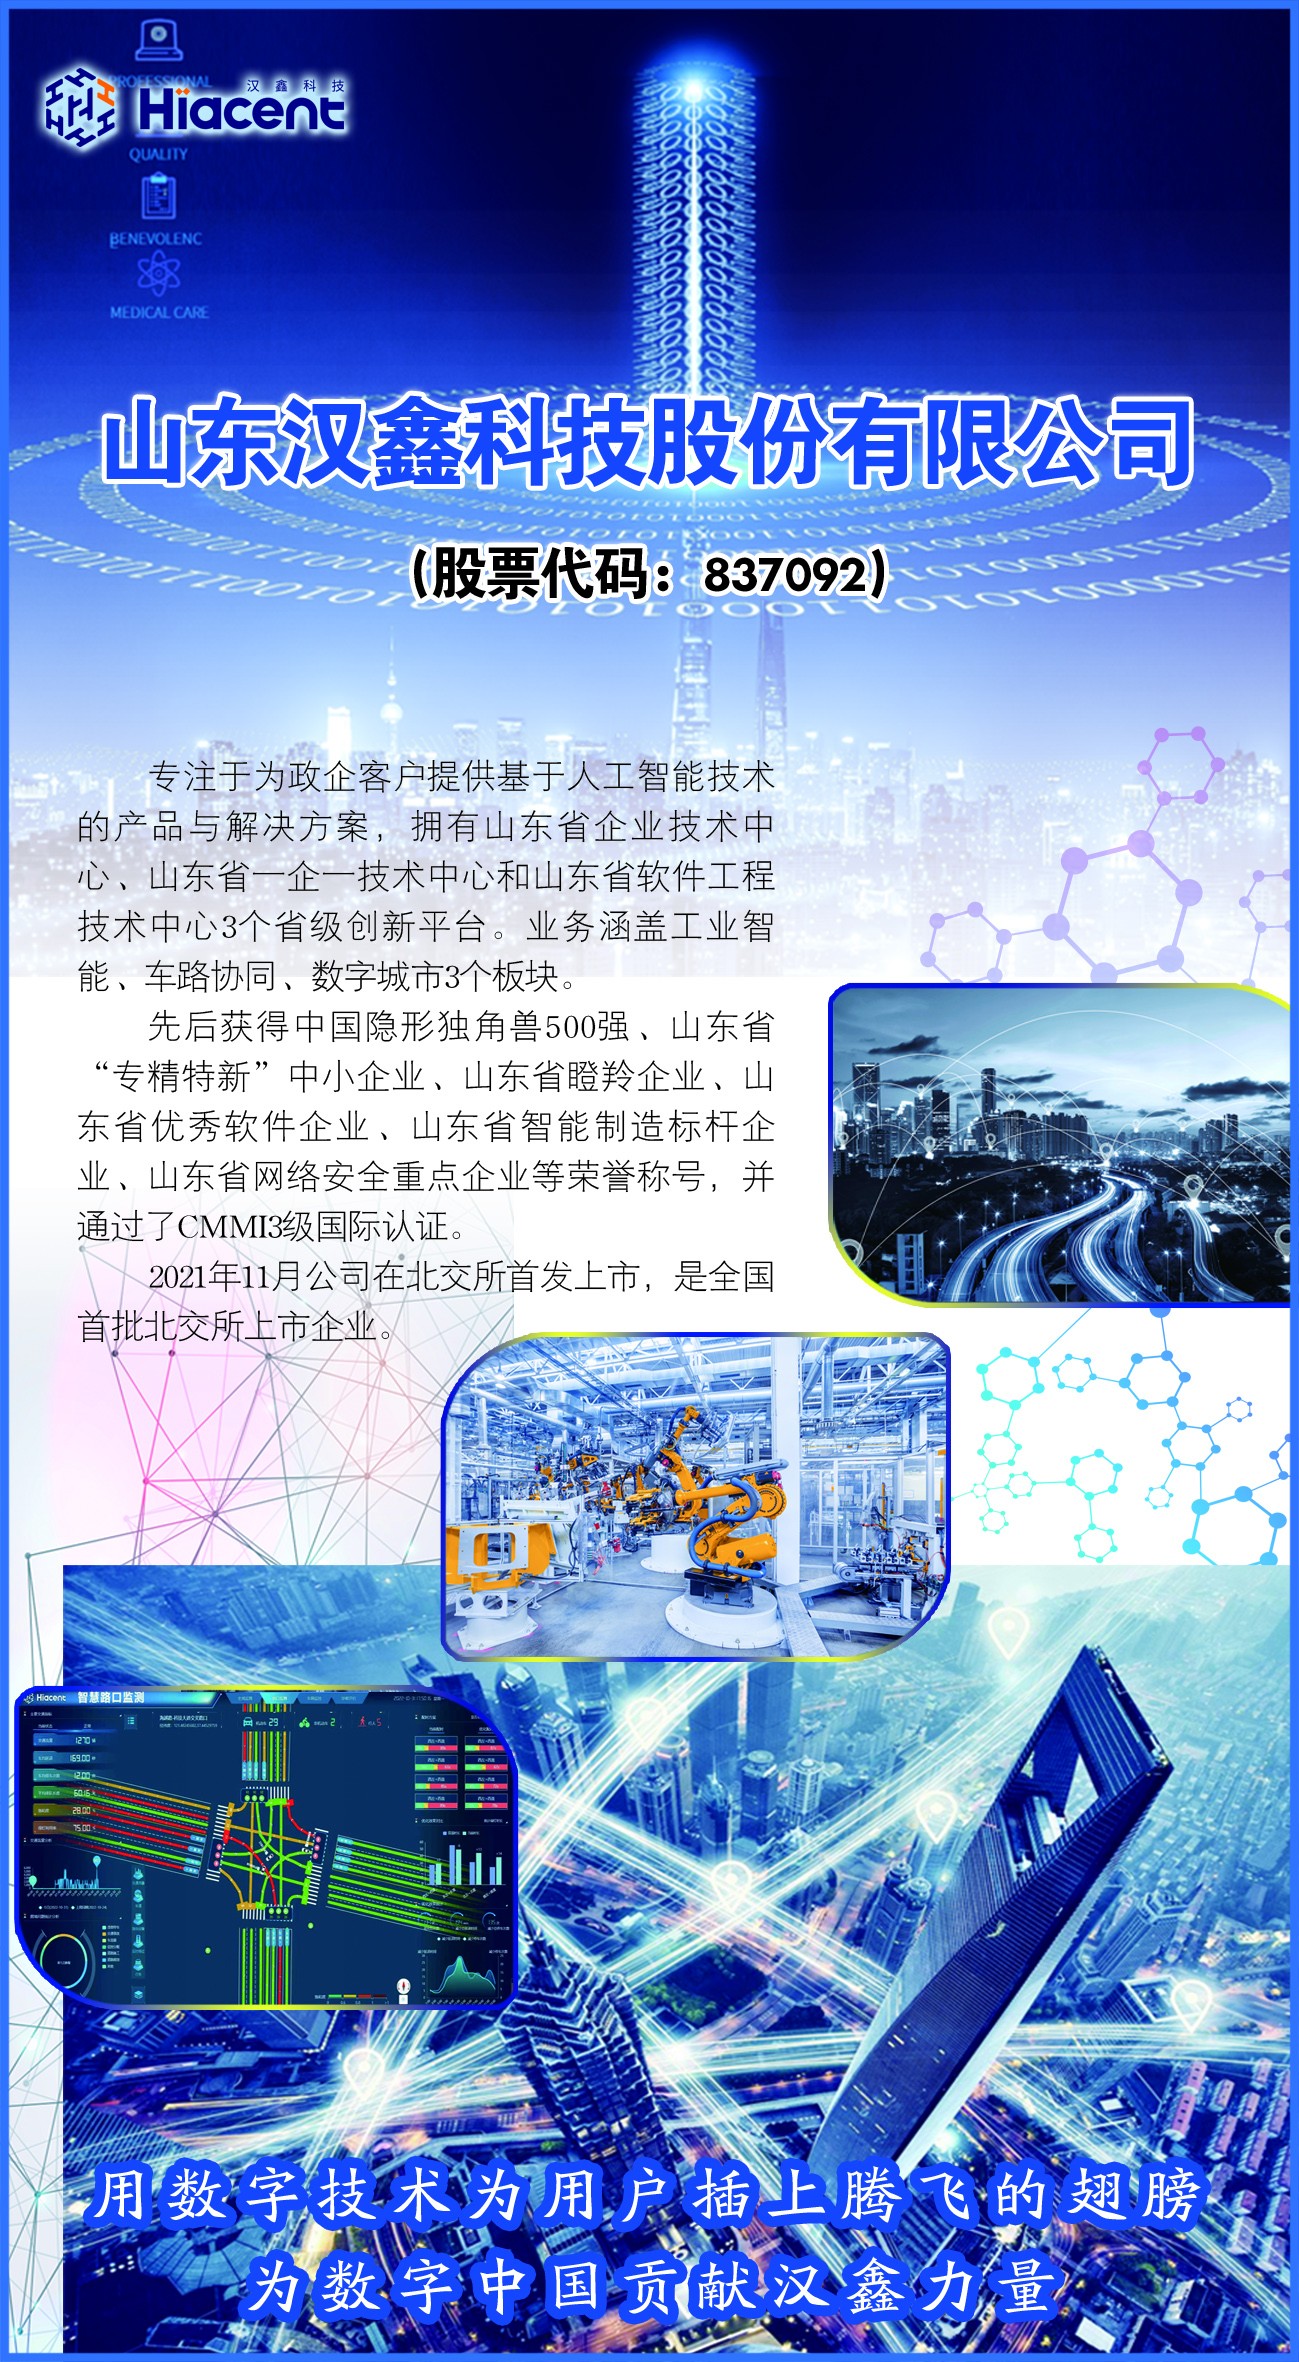 山东汉鑫科技股份有限公司： 科技赋能发展 创新引领未来